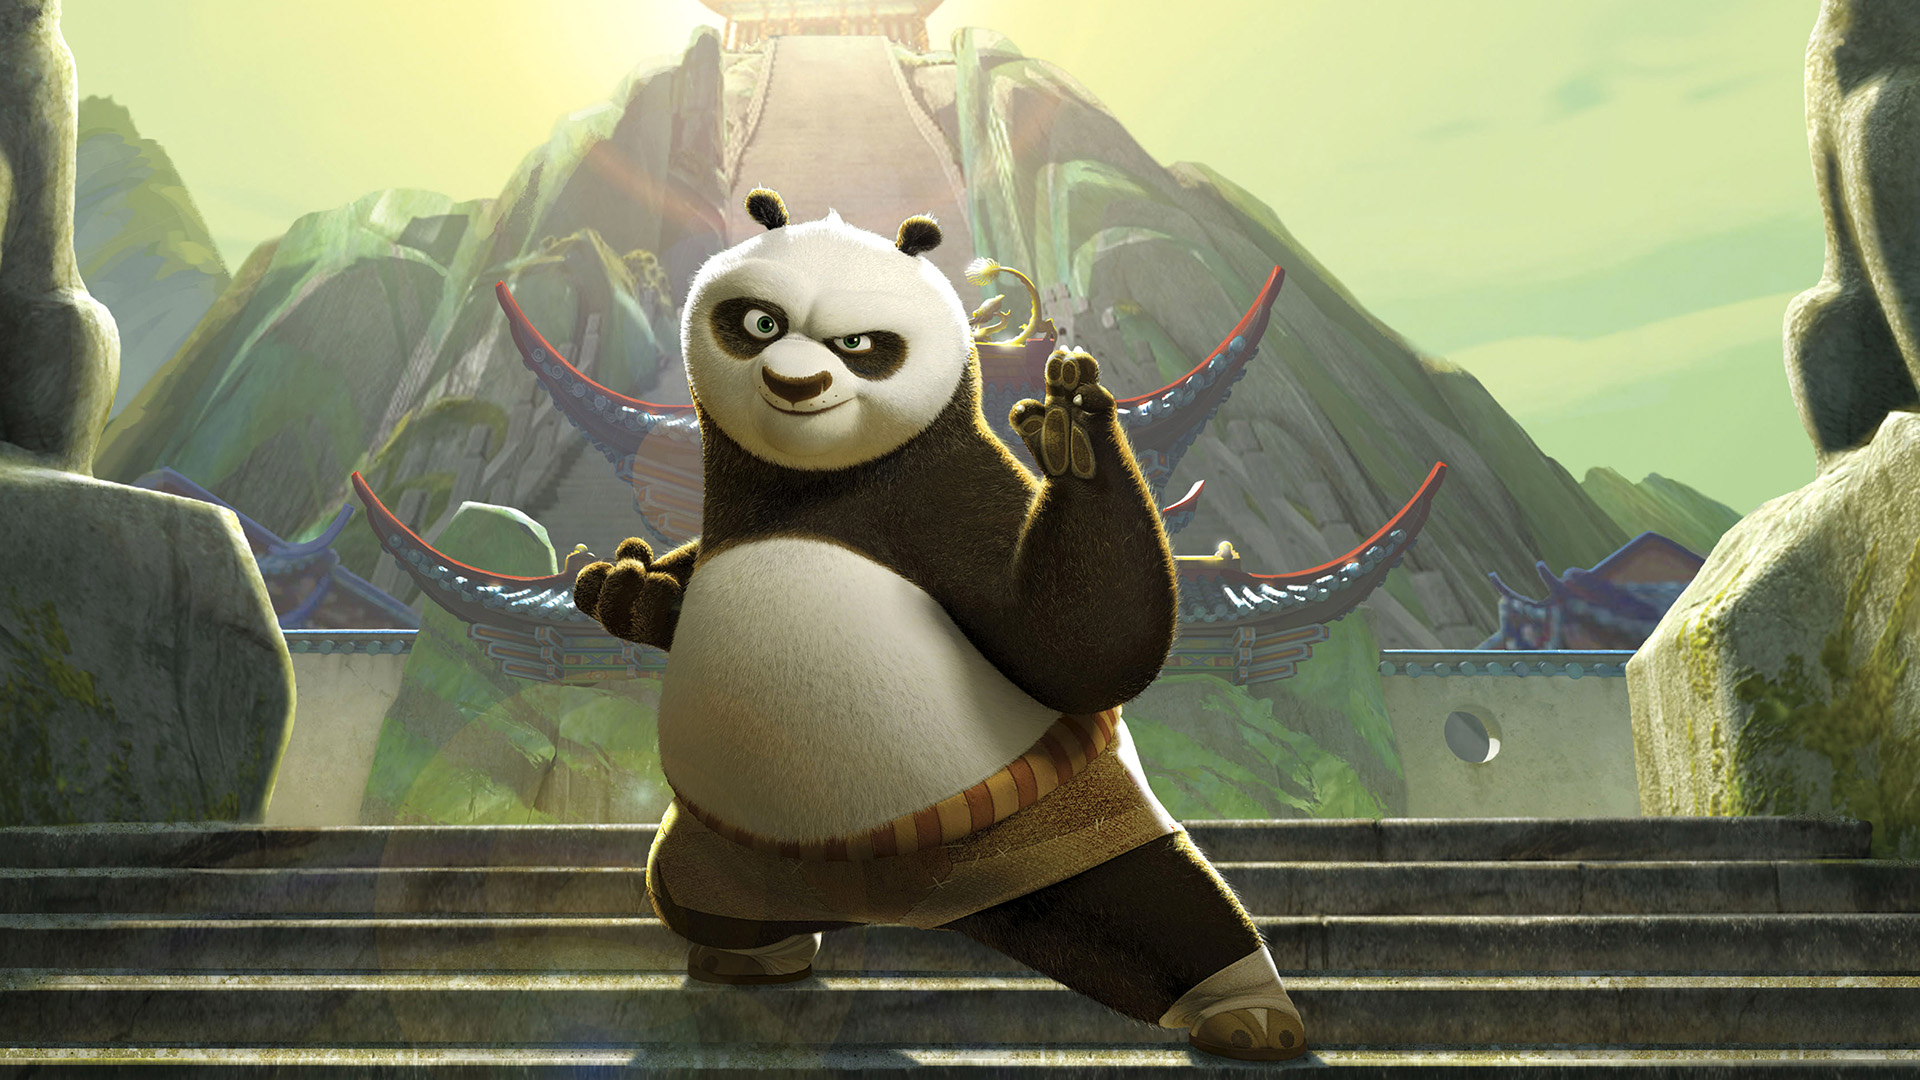 Papel de Parede do Kung Fu Panda